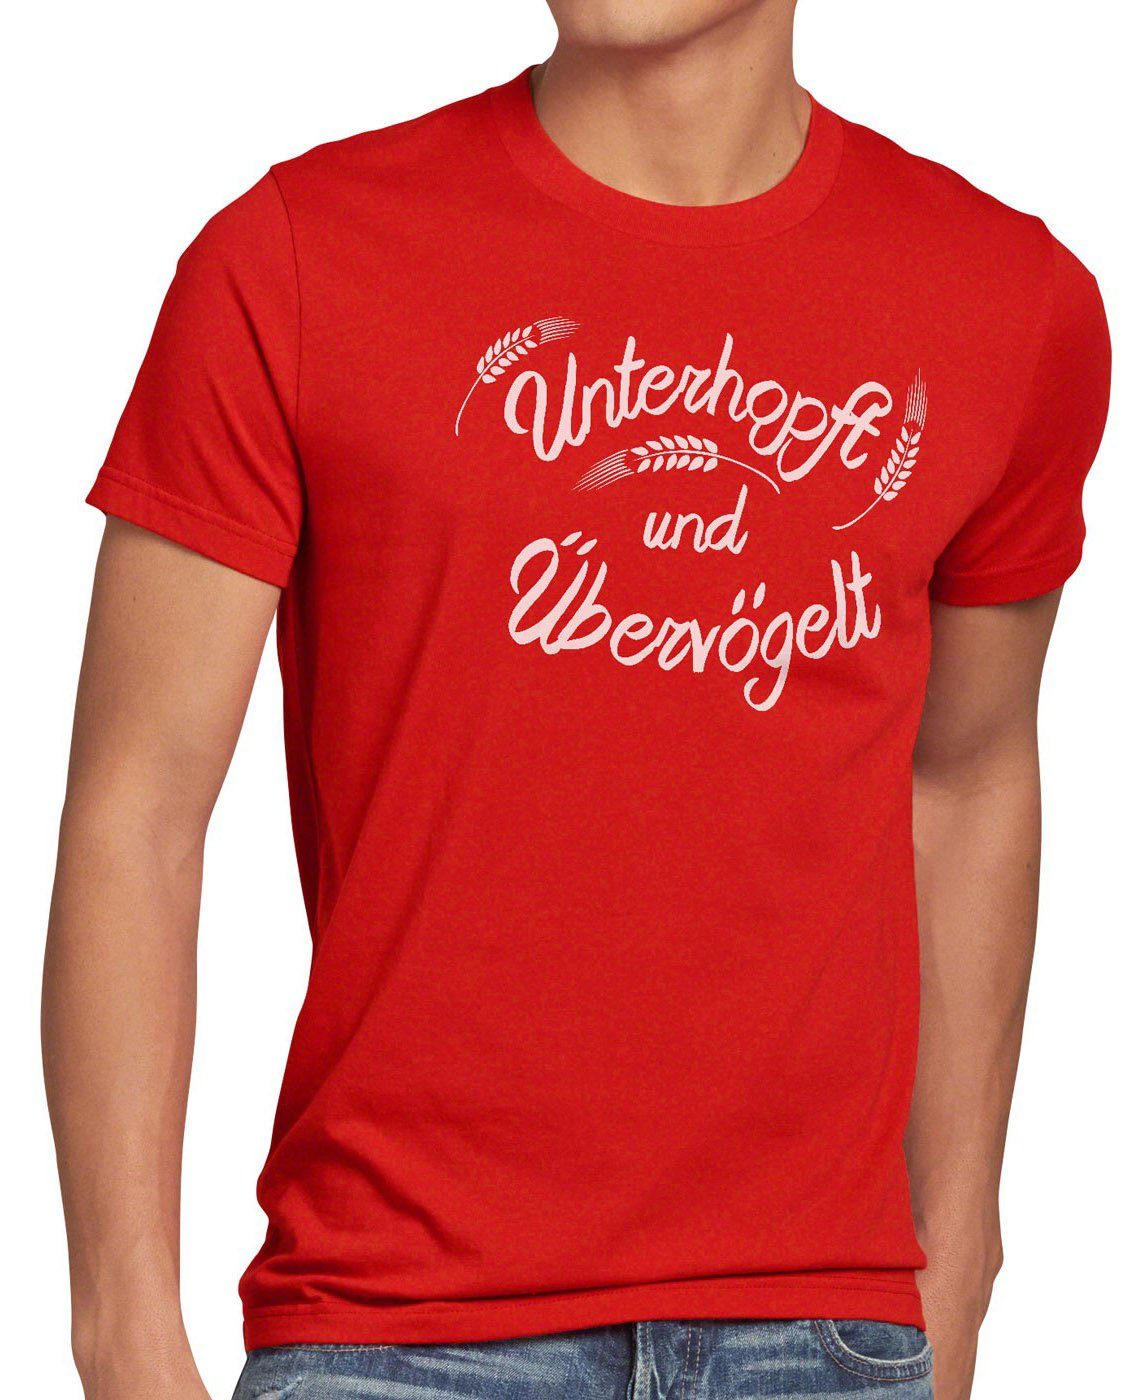 Fun Bier Kult Shirt Malz Print-Shirt Unterhopft Übervögelt T-Shirt style3 Herren Funshirt Spruch rot